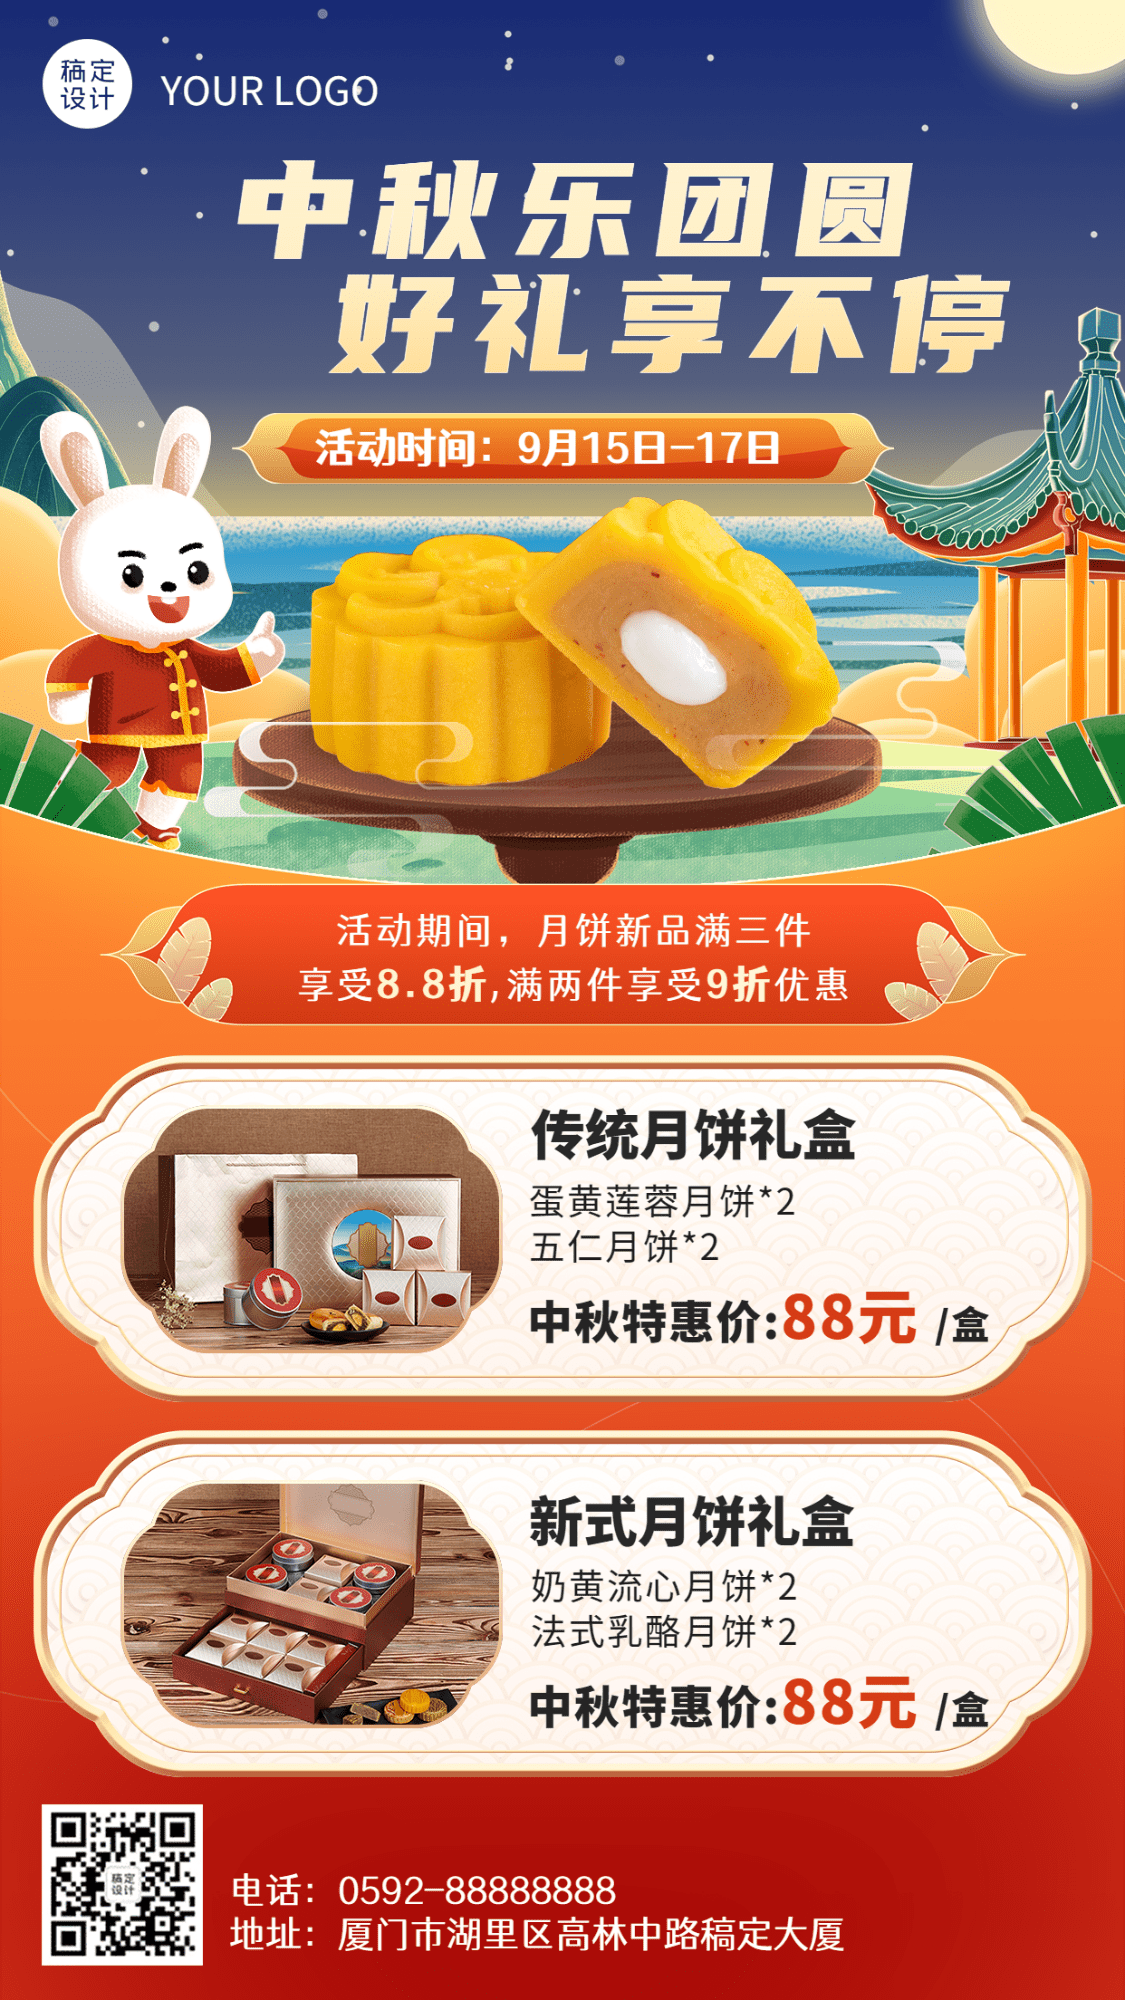 中秋节传统美食节日营销手绘插画手机海报